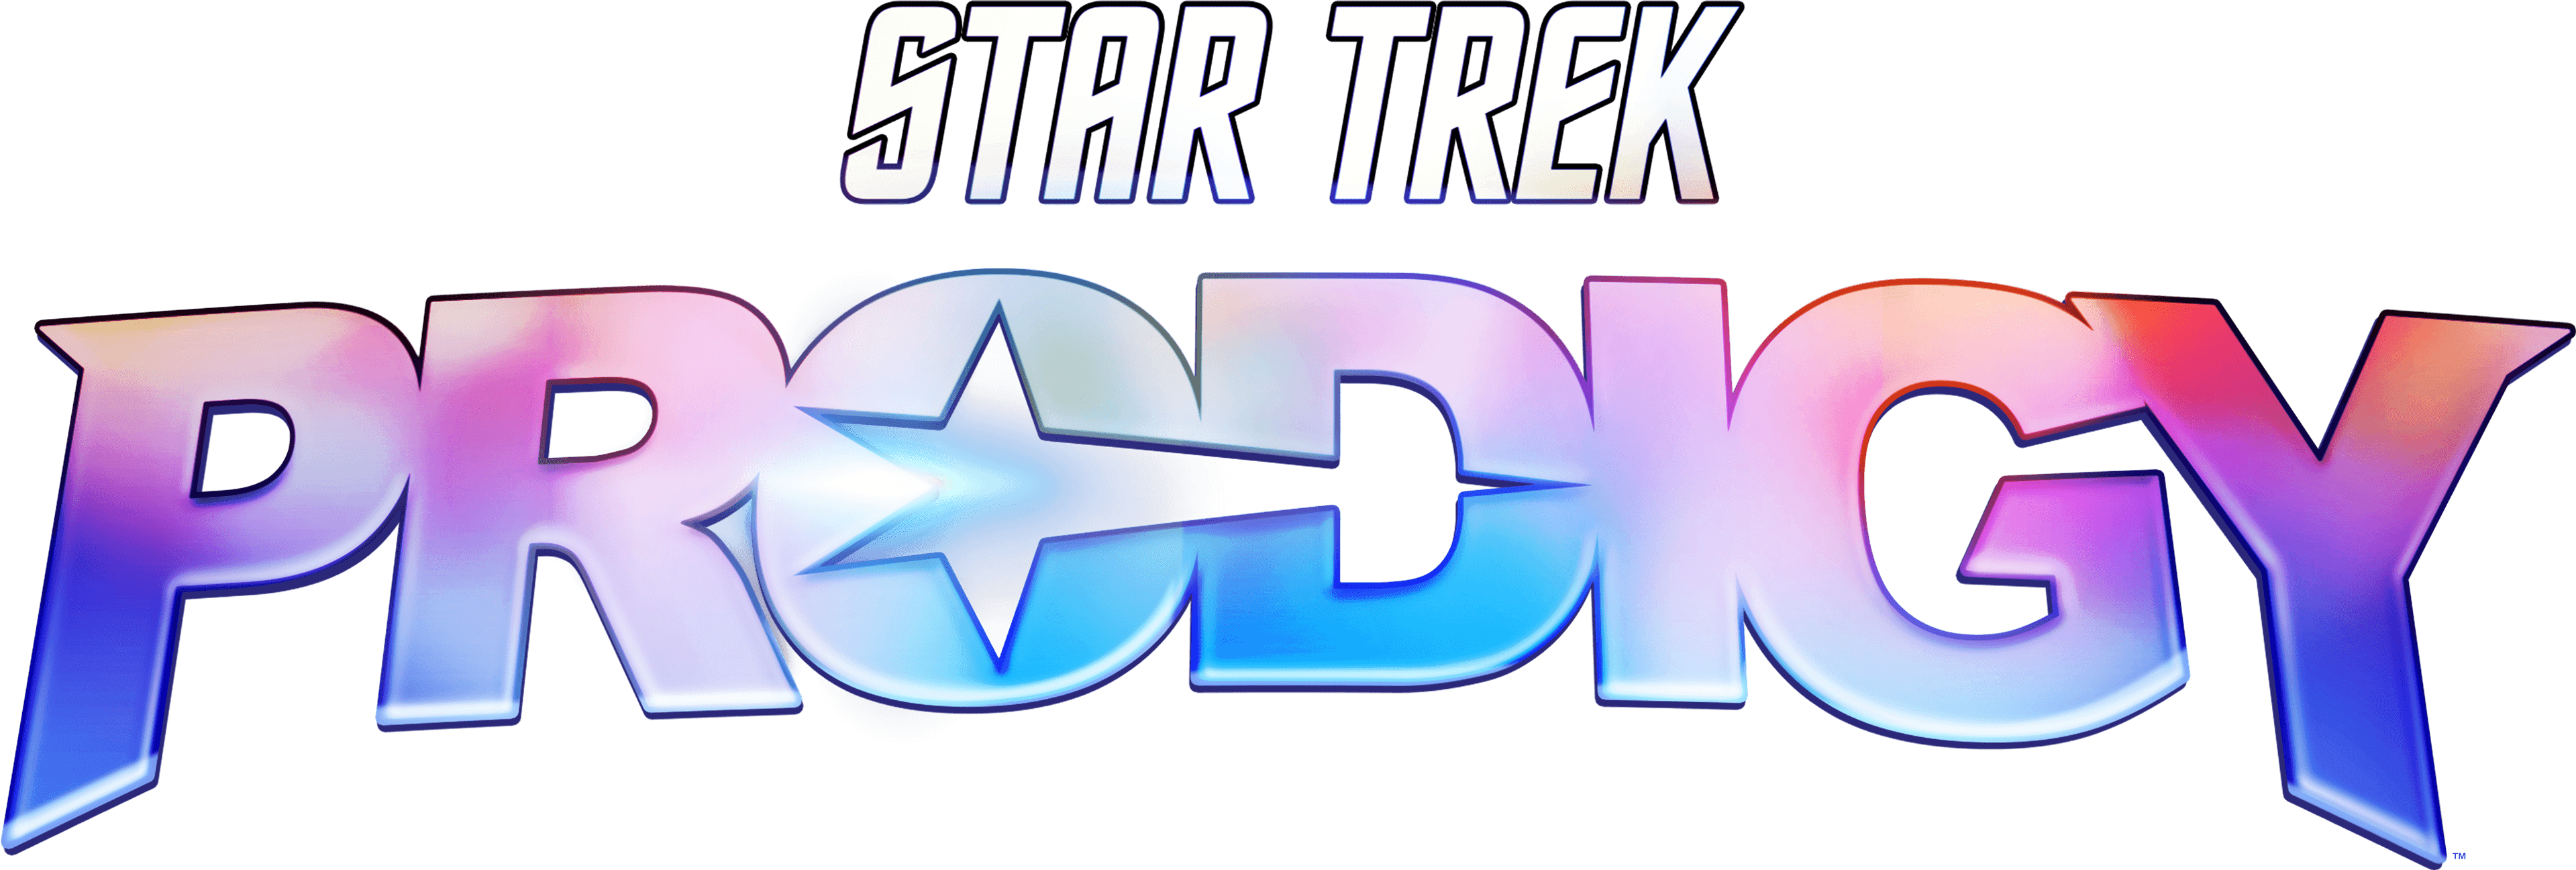 Star Trek: Prodigy logo